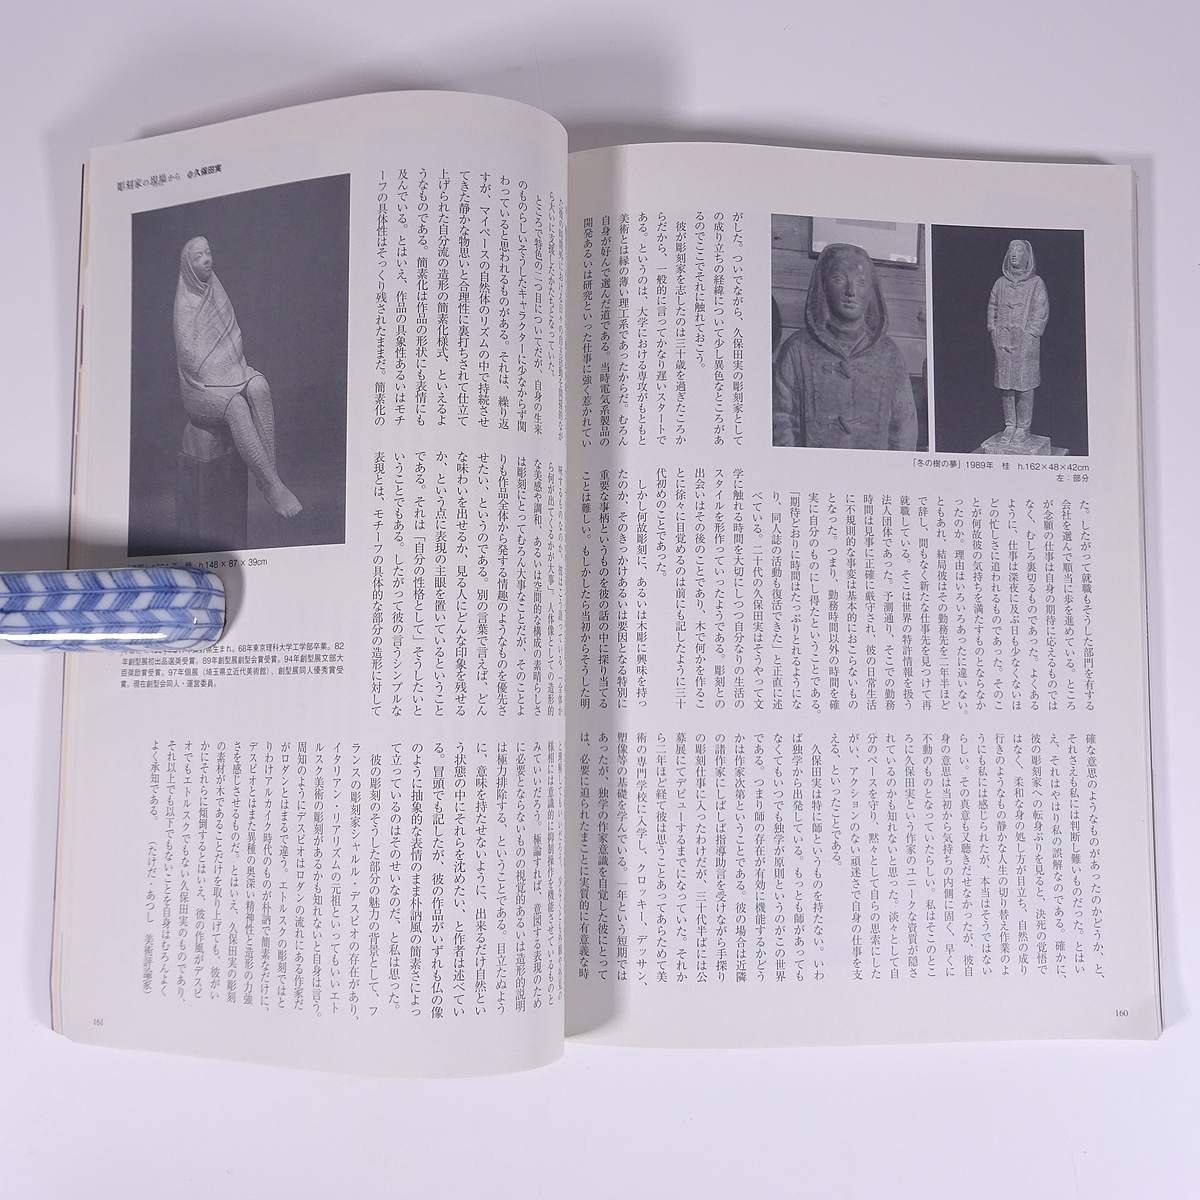  изобразительное искусство. окно No.318 2010/3 жизнь. . фирма журнал искусство изобразительное искусство картина западное кино японская живопись специальный выпуск * Sengoku ..* Hasegawa и т.п. . кисть . небо внизу ... другой 